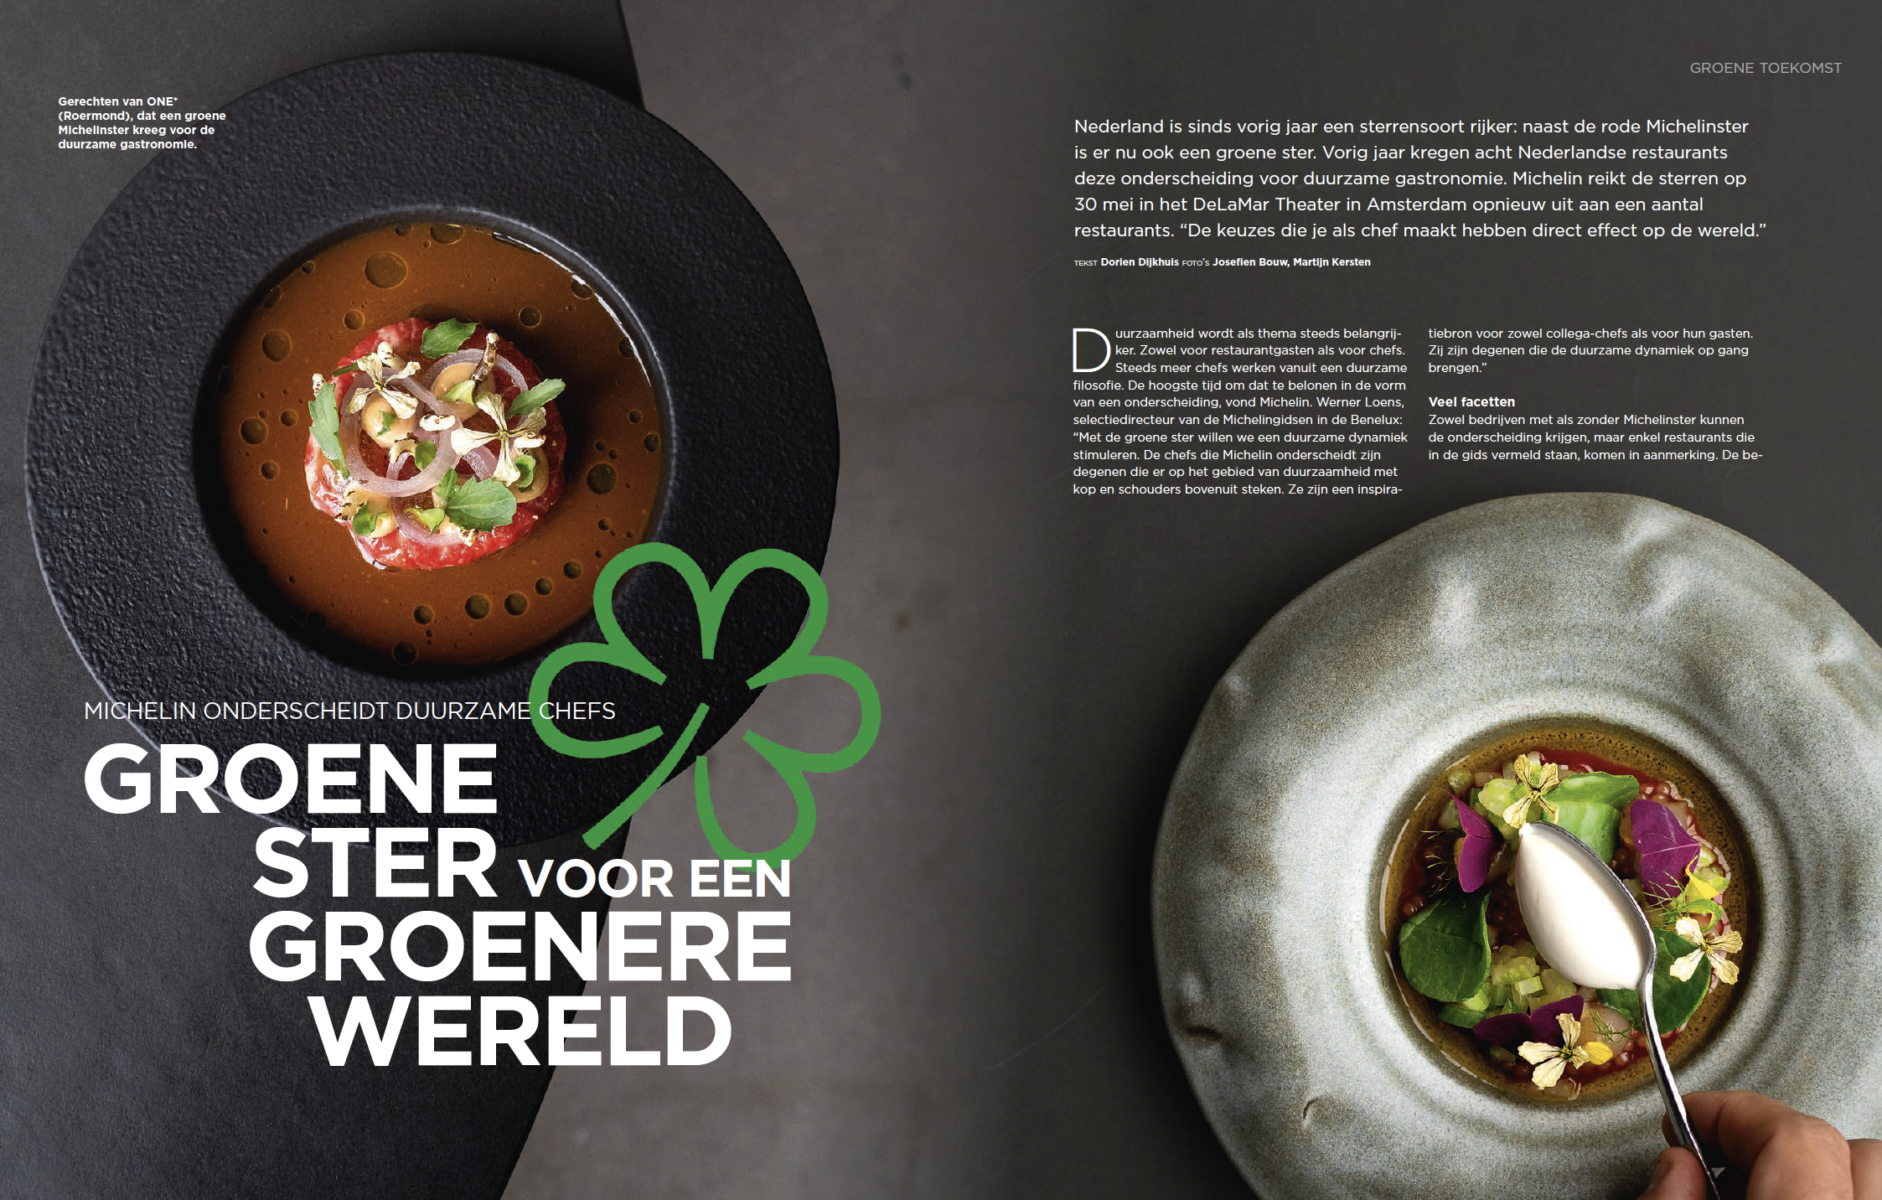 Michelin onderscheidt duurzame chefs. Groene ster voor een groenere wereld!